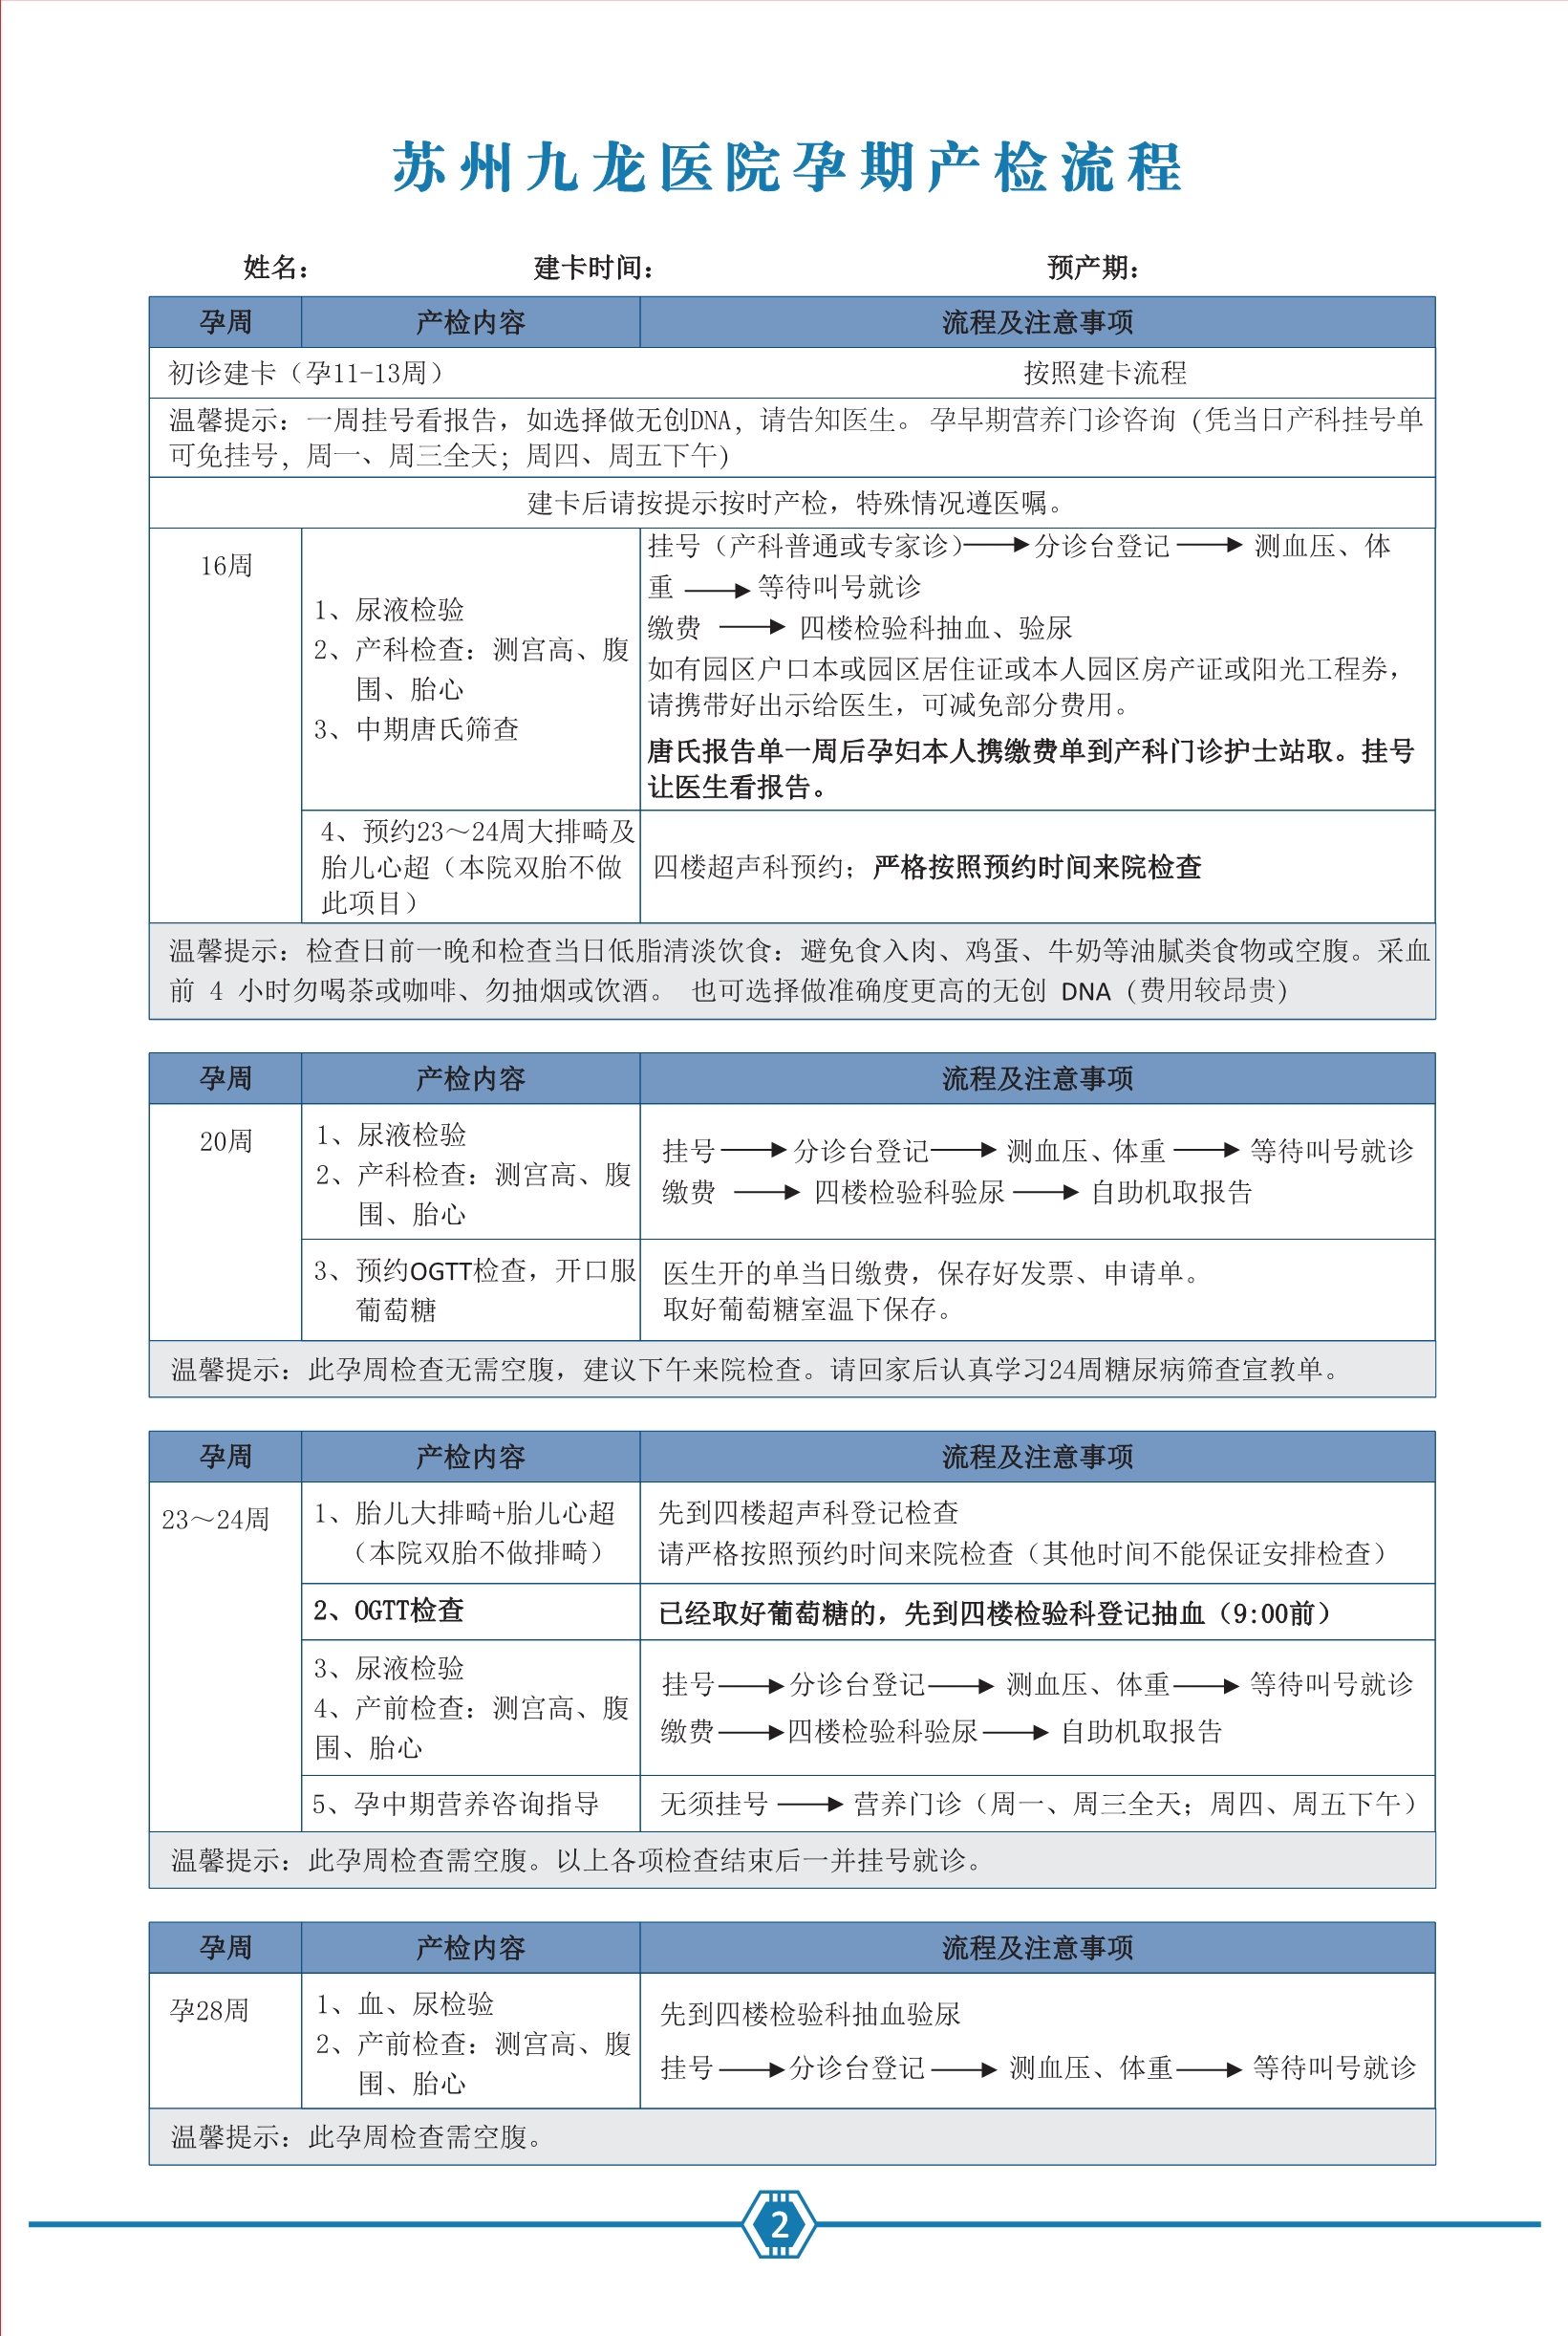 九龙医院产检专用手册2021.06.29--去框_3.jpg